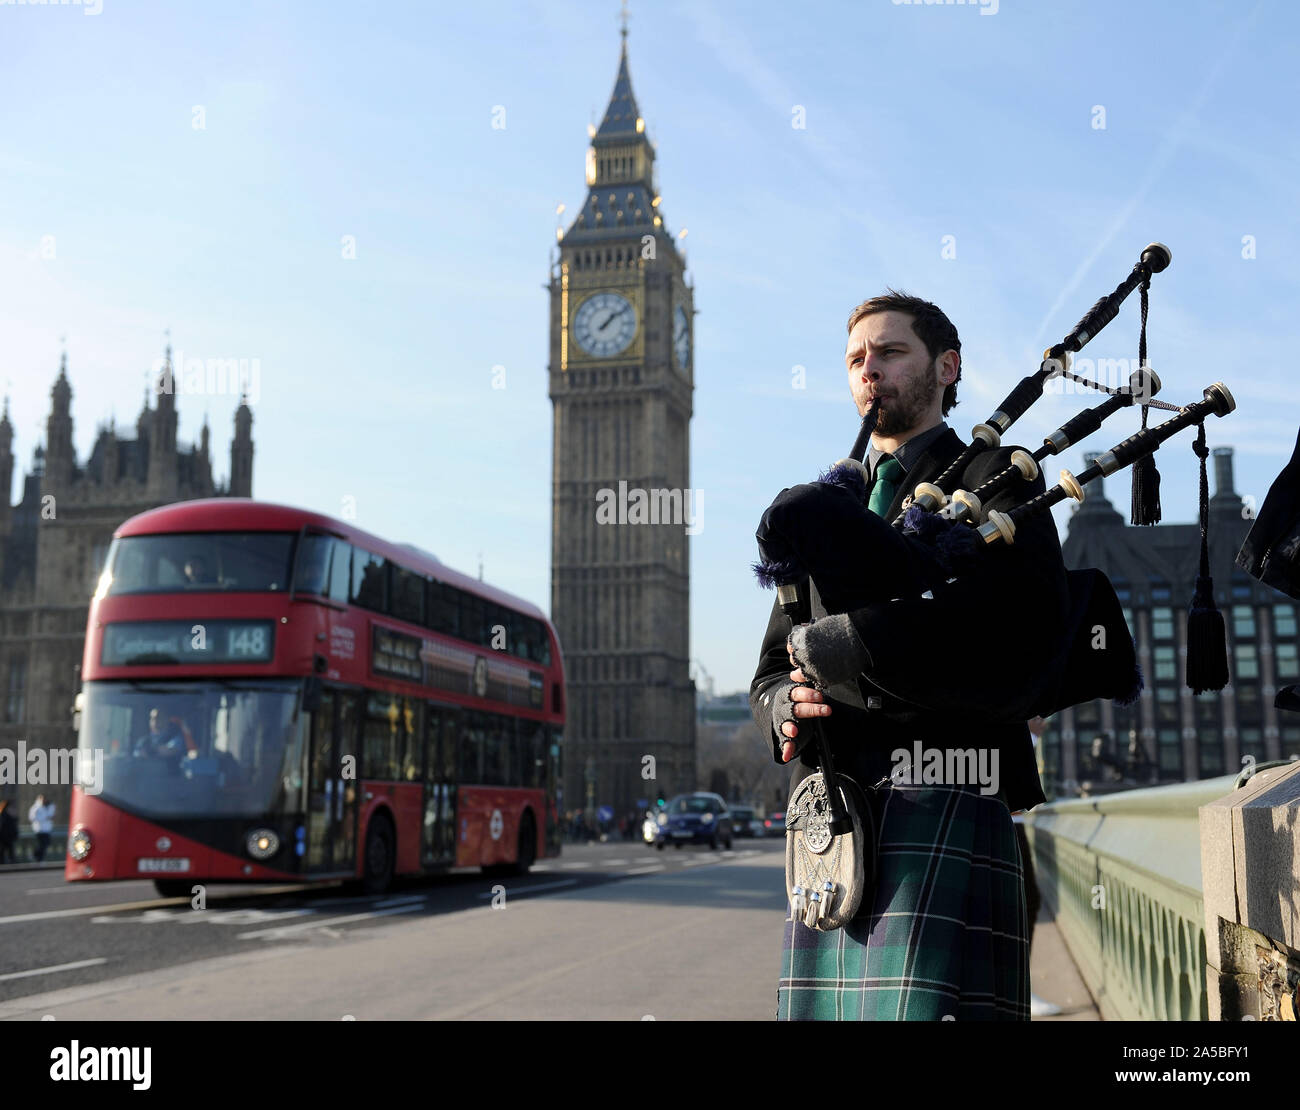 El hombre desempeña gaitas por el Big Ben, Londres, Reino Unido. Foto de stock